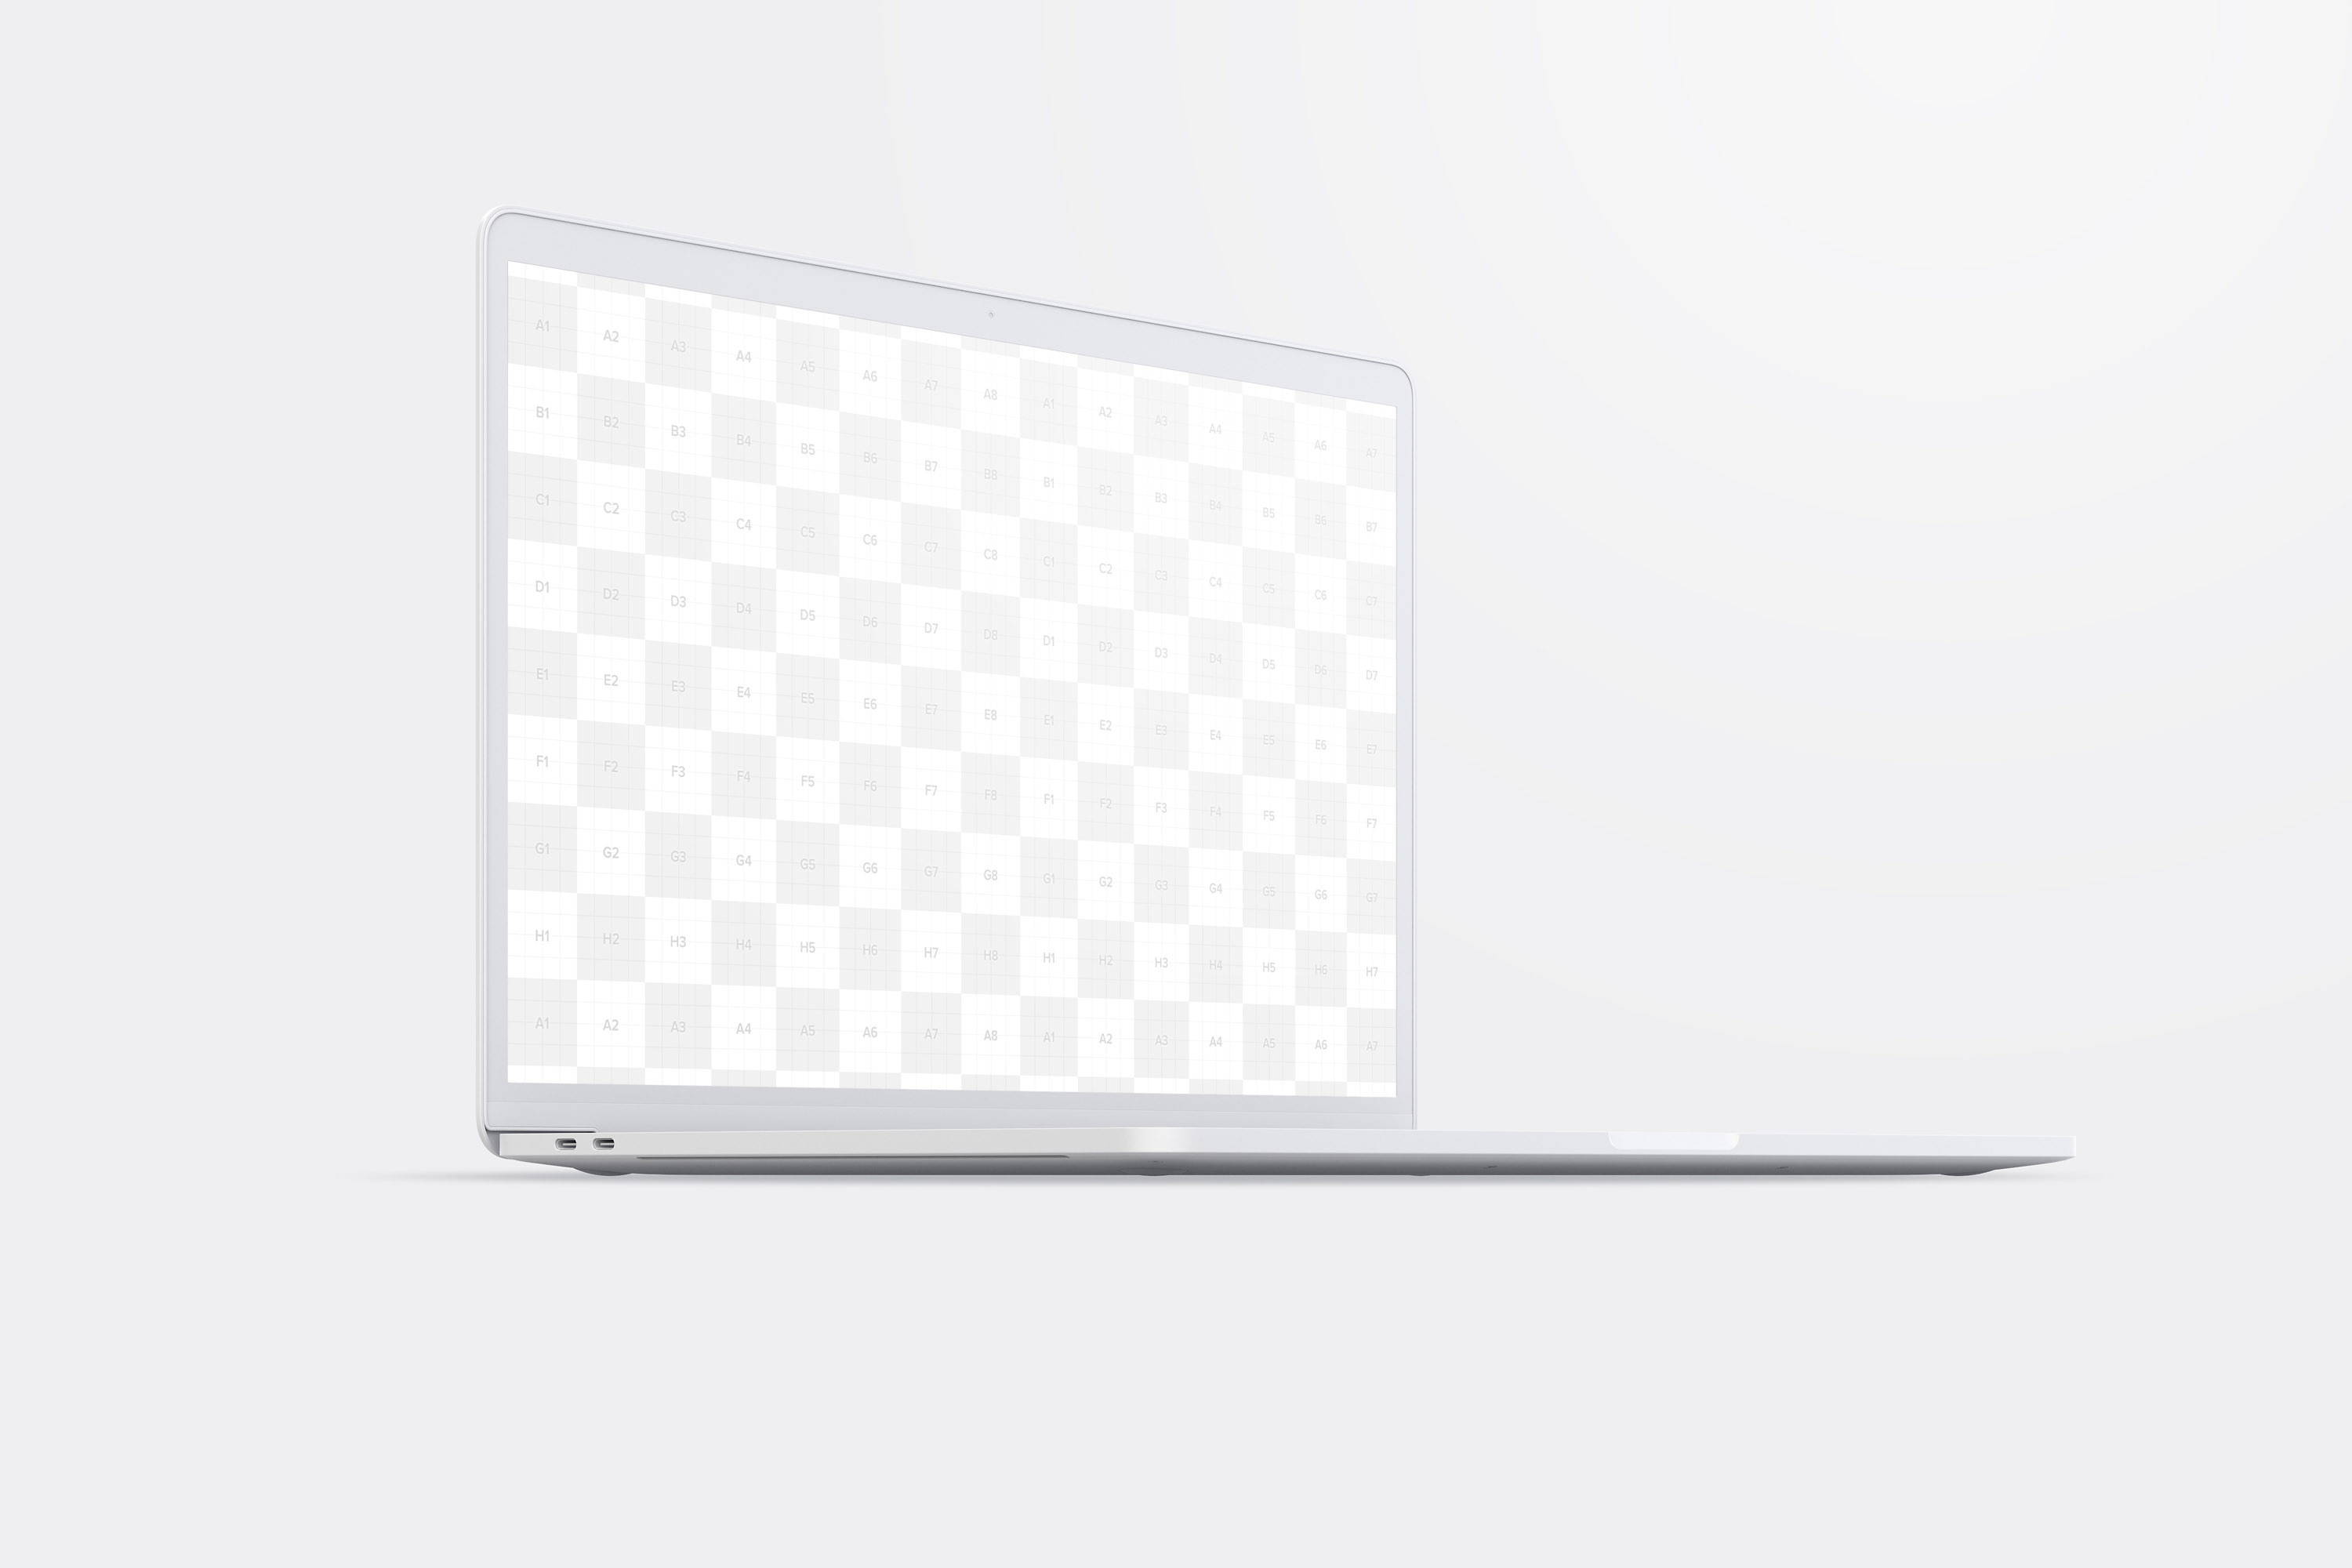 15寸MacBook Pro苹果笔记本电脑屏幕设计效果图预览前左视图样机02 Clay MacBook Pro 15" with Touch Bar, Front Left View Mockup 02插图(1)